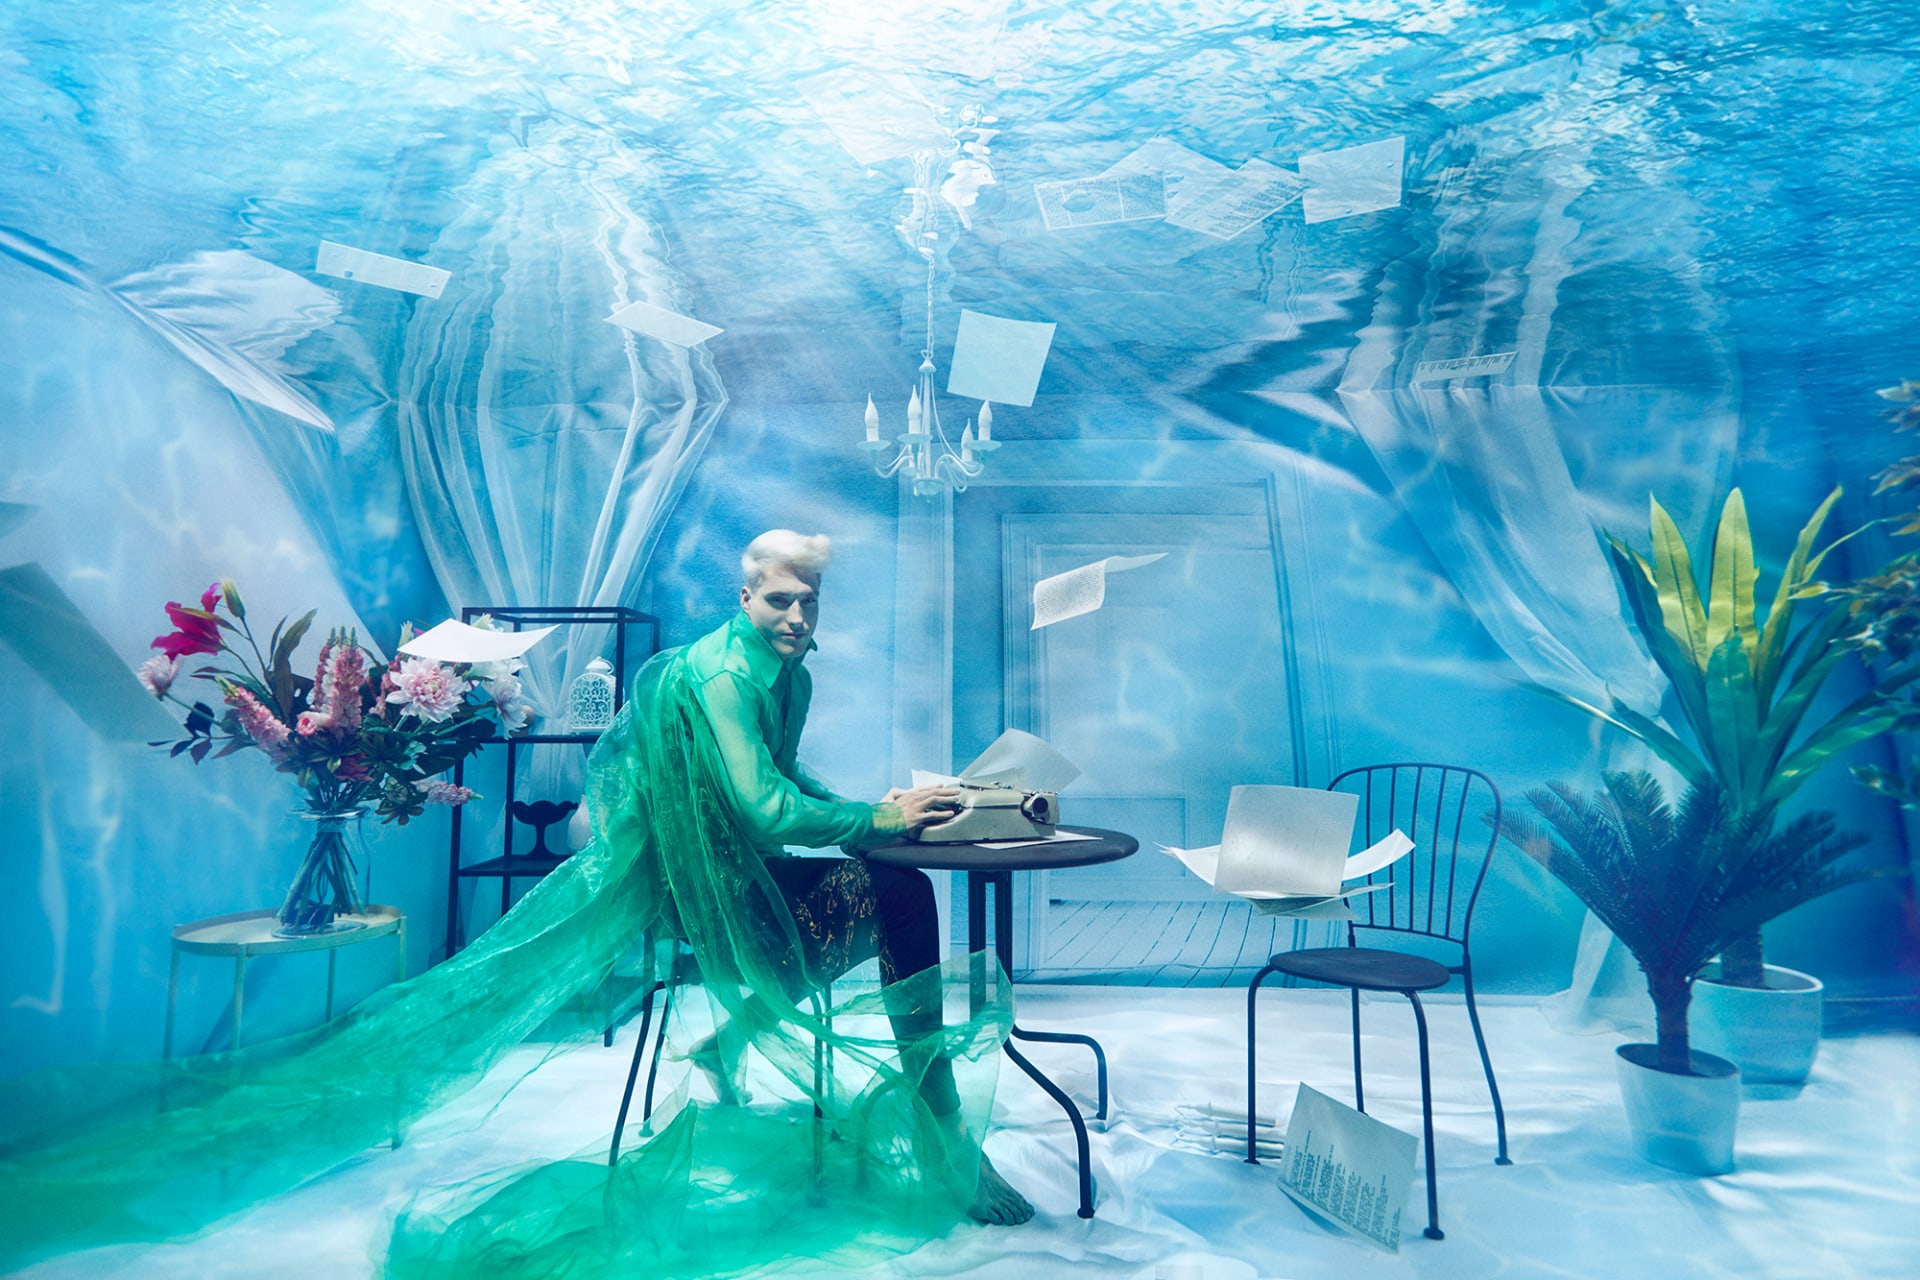 "تموجات الموضة" .. اكتشف سحر الأزياء تحت الماء بعدسة مصور مقيم في دبي